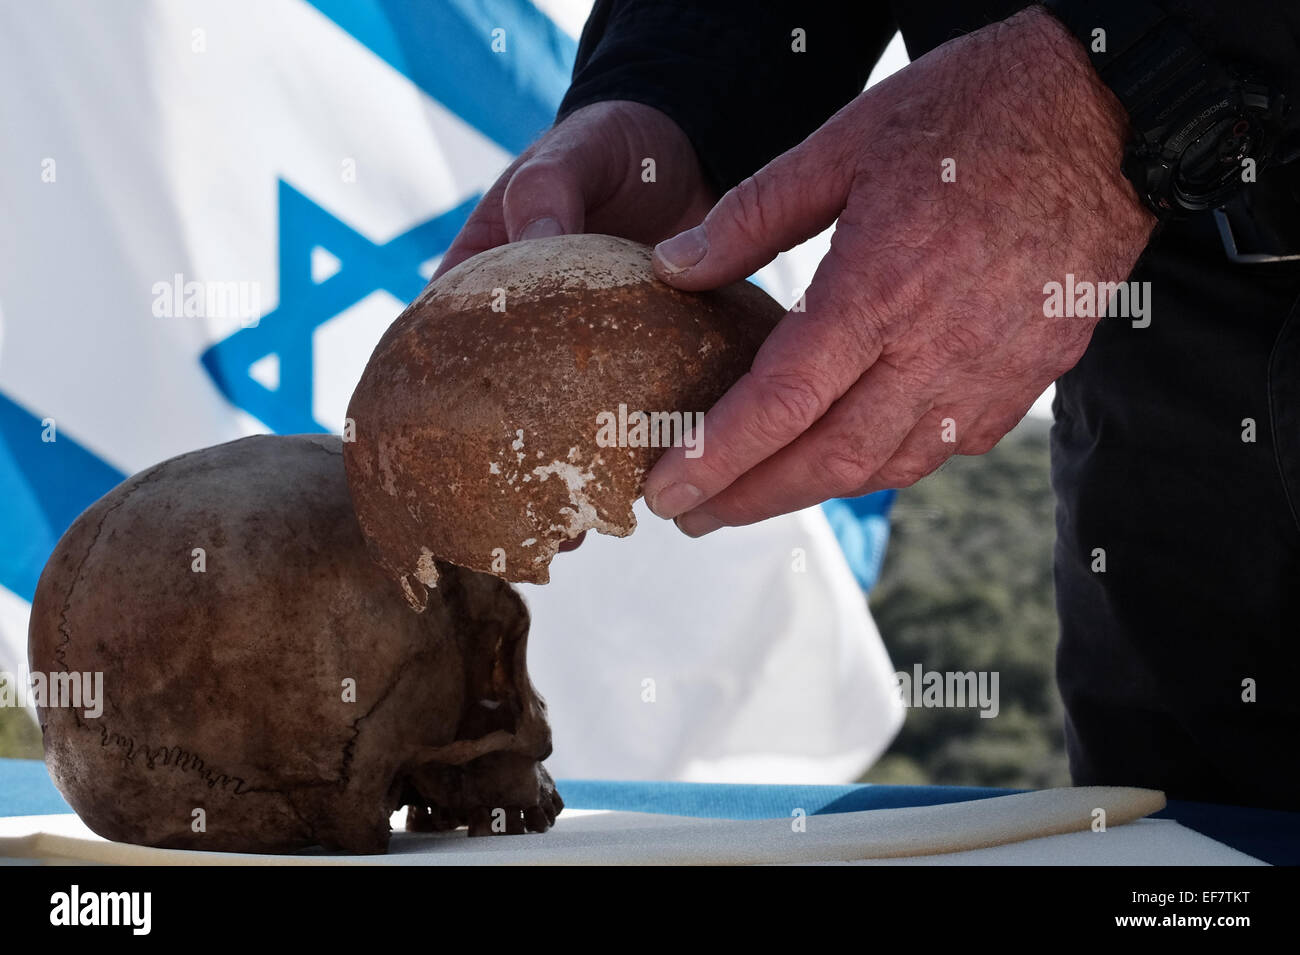 Manot Grotte, Israël. 28 janvier, 2015. Le professeur ISRAËL HERSHKOVITZ gère le Manot Cave crâne en le comparant à un Homo sapien crâne. 55 000 ans d'un crâne humain découvert dans la grotte de Manot dans l'ouest de la Galilée prouve, selon les scientifiques, que l'homme moderne (Homo sapiens) a migré depuis l'Afrique vers le reste du monde il y a environ 65 000 ans. Chercheurs considèrent le crâne, la première preuve fossilisée à l'extérieur de l'Afrique, 'l'une des plus importantes découvertes dans l'étude de l'évolution humaine. Credit : Alon Nir/Alamy Live News Banque D'Images